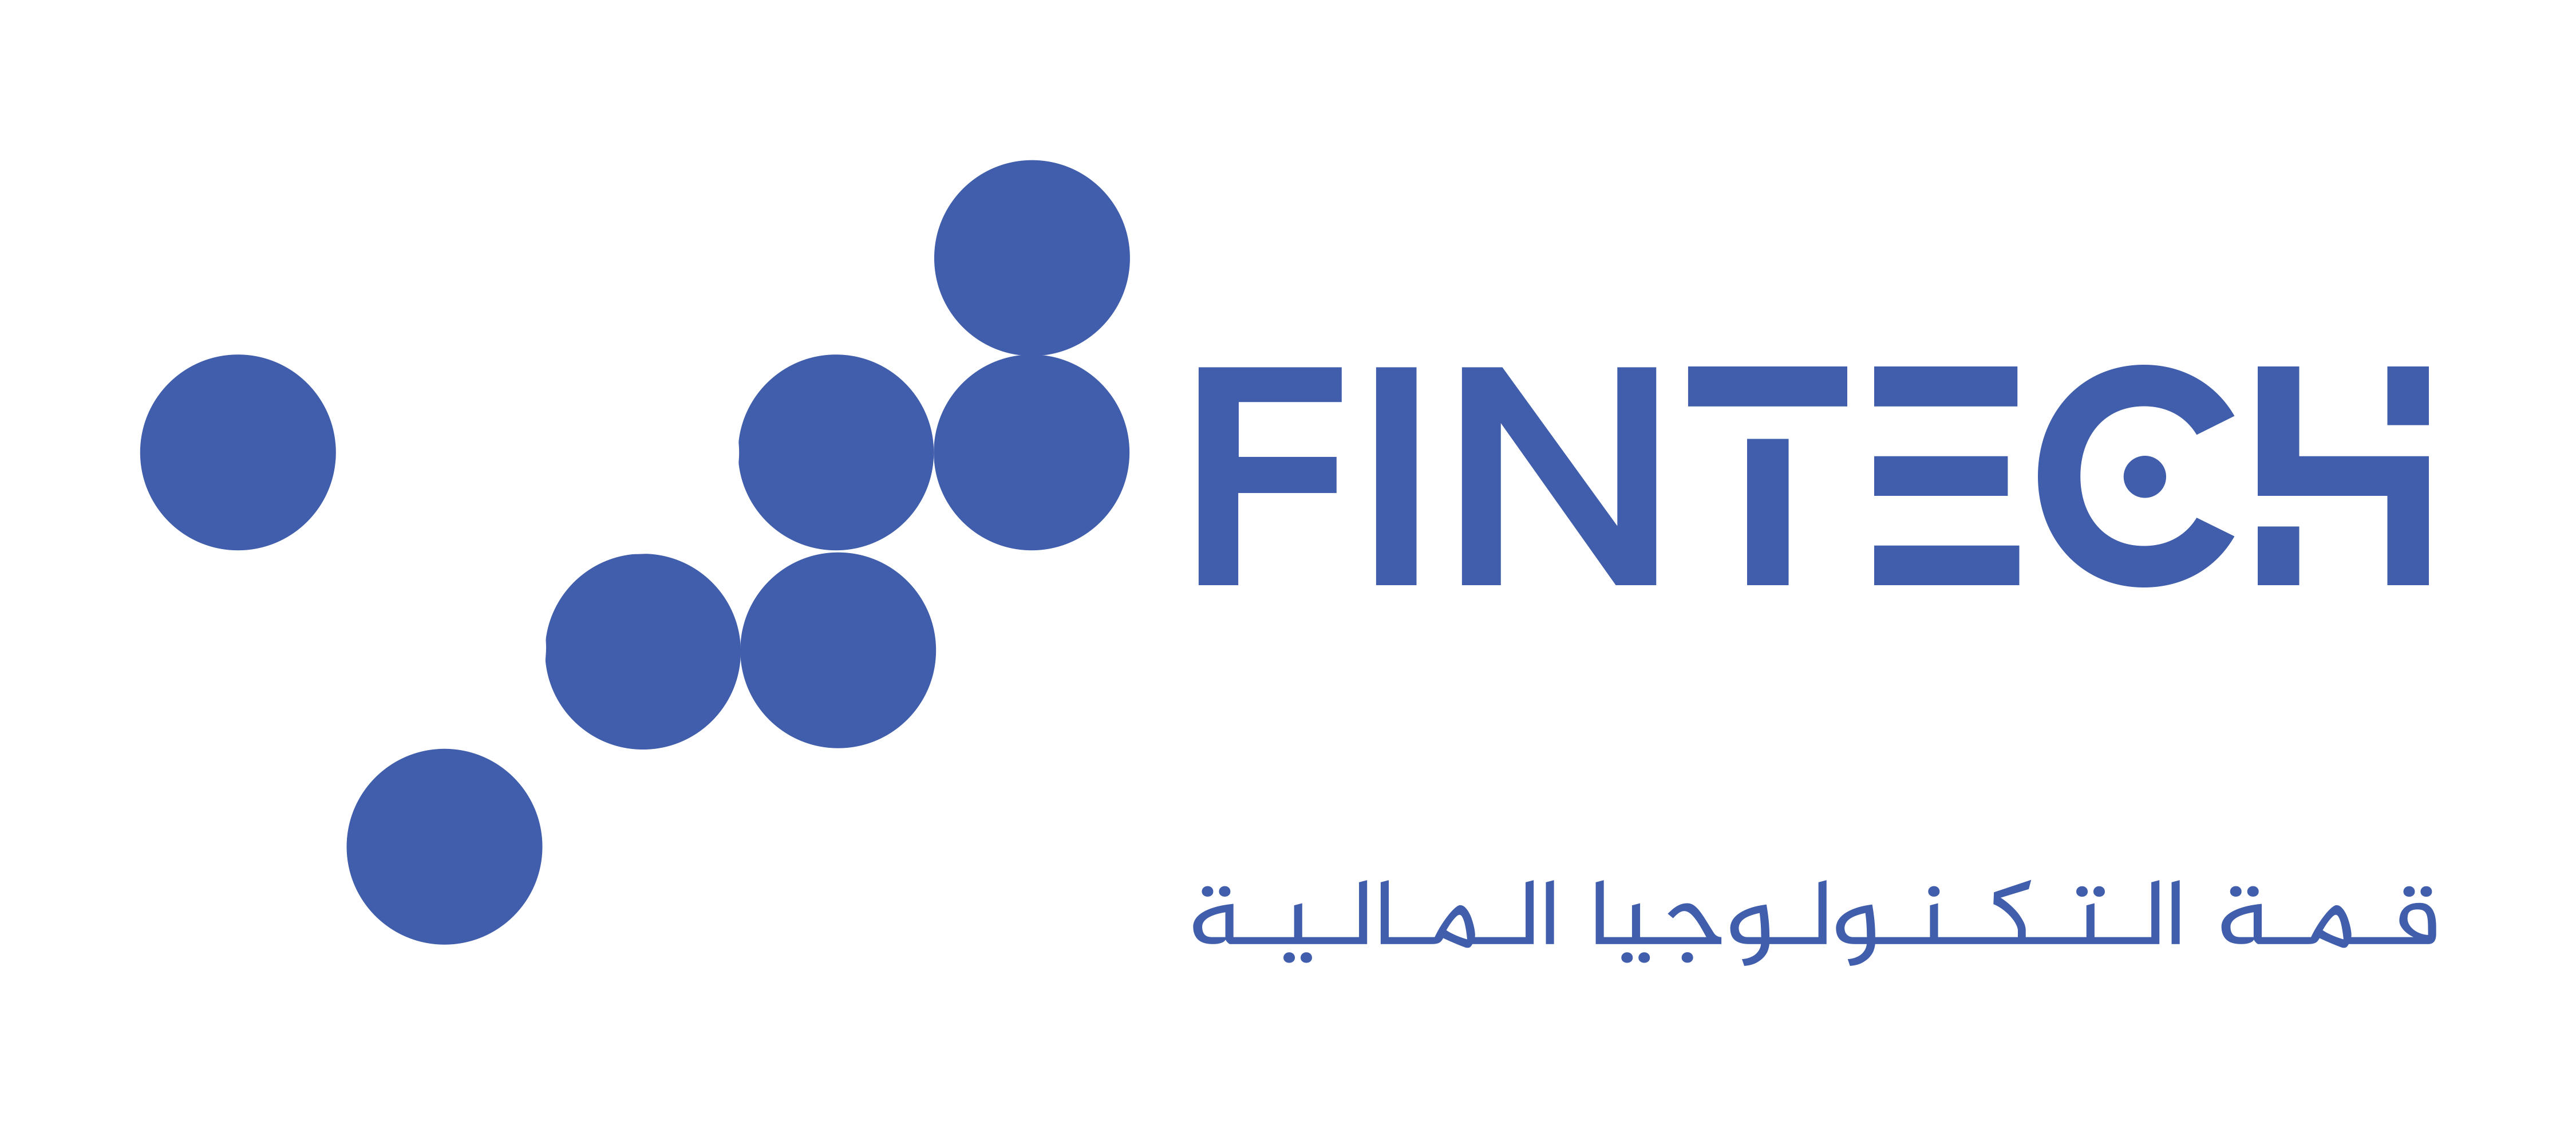 Fintech Summit Middle East قمة التكنولوجيا المالية